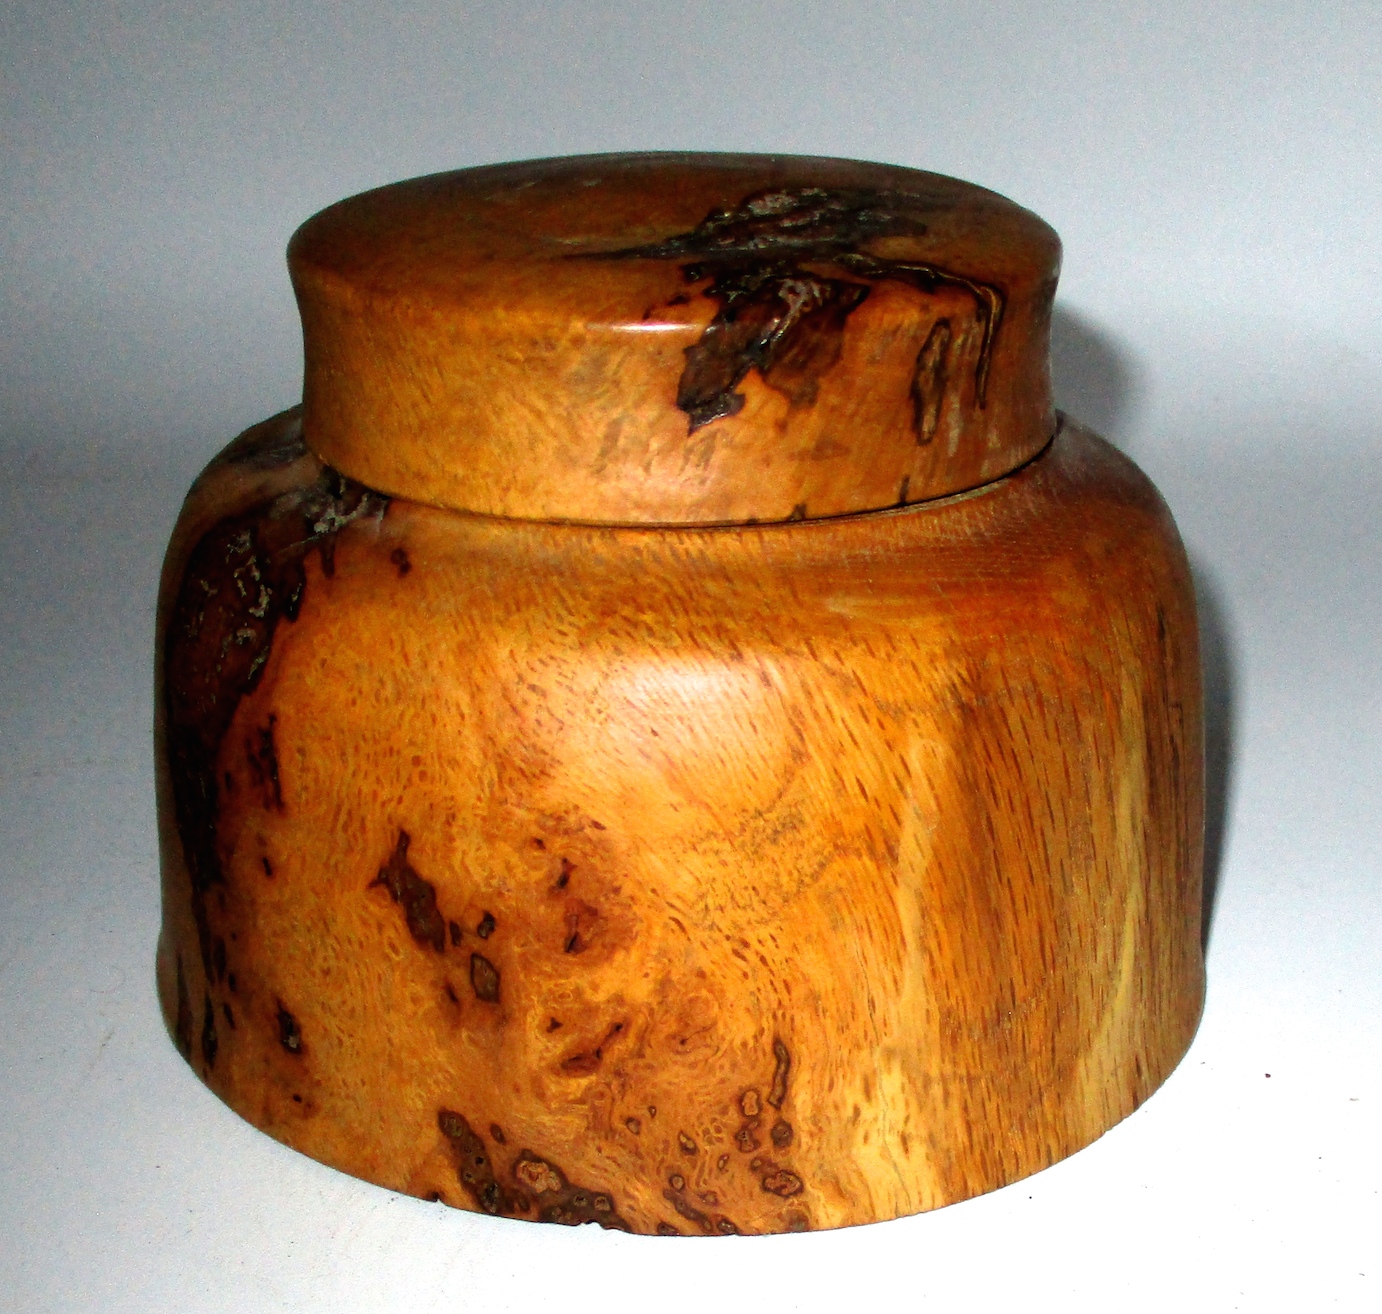 Myrtle Wood Trinket Box (3 1/2" H x 5" D)